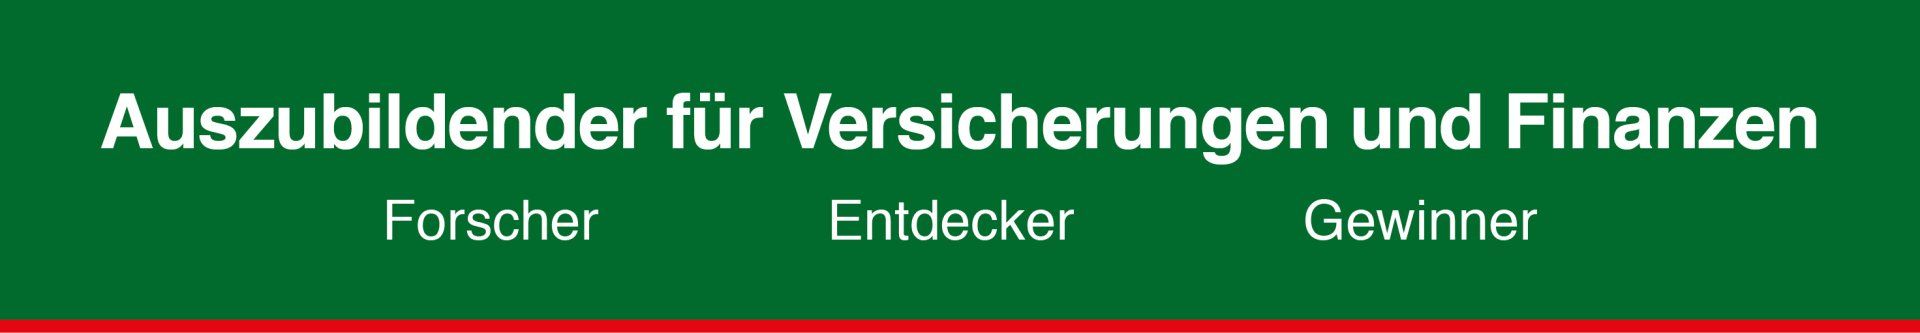 2-serve HDI Osnabrück Mitarbeiter gesucht: Stellenanzeige Auszubildender für Versicherungen und Finanzen